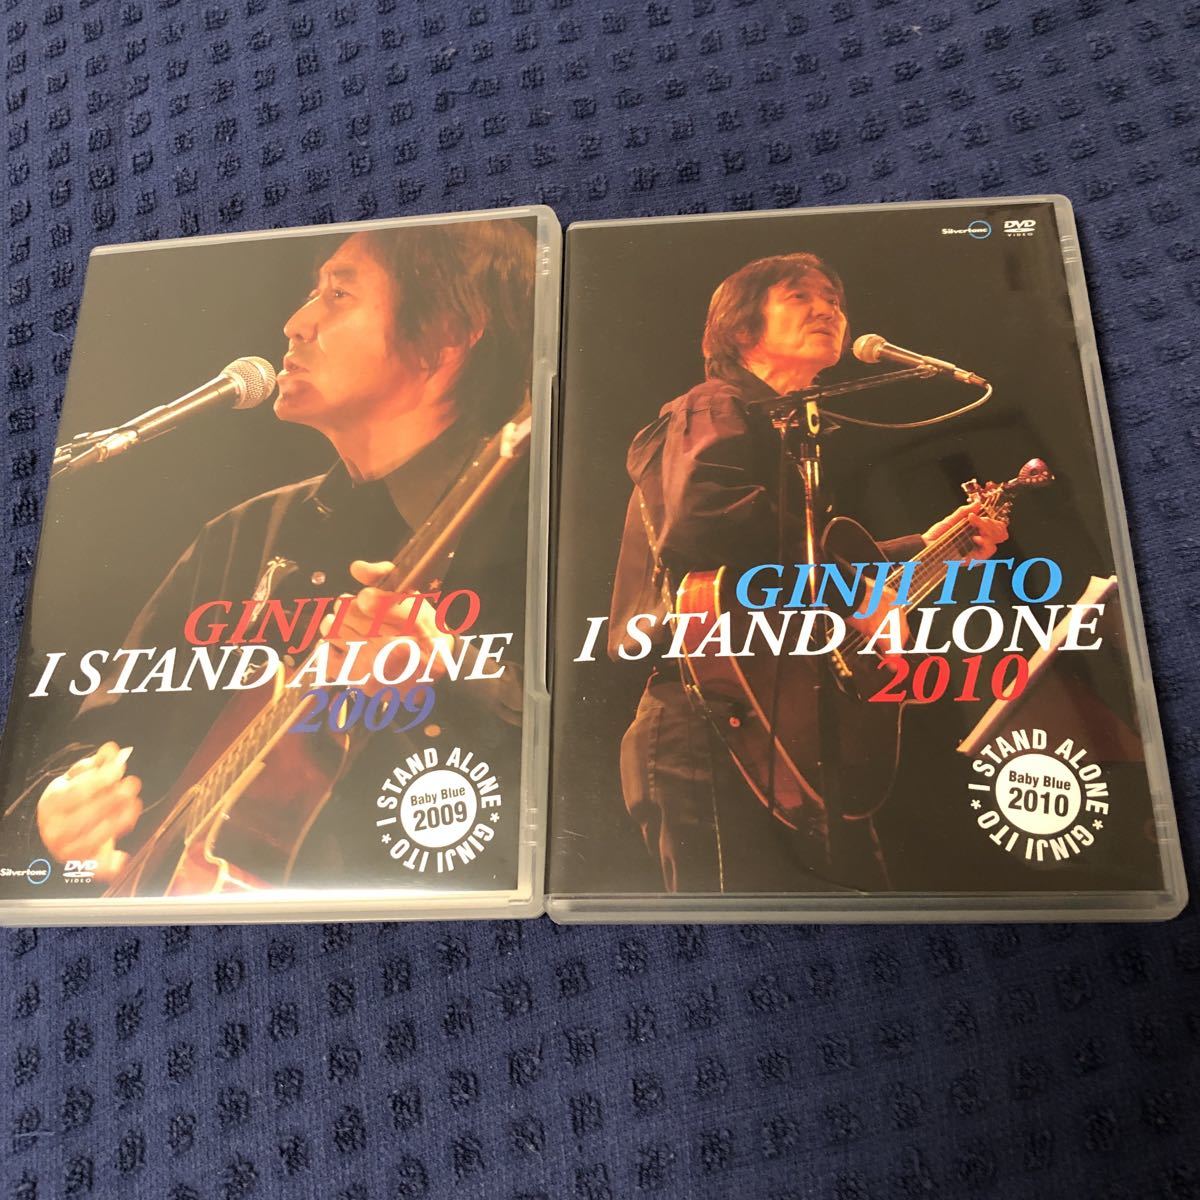 音楽DVD「伊藤銀次「I STAND ALONE 2009」「I STAND ALONE 2010」」 2本セット 美品 LIVE ナイアガラ 廃盤 希少盤